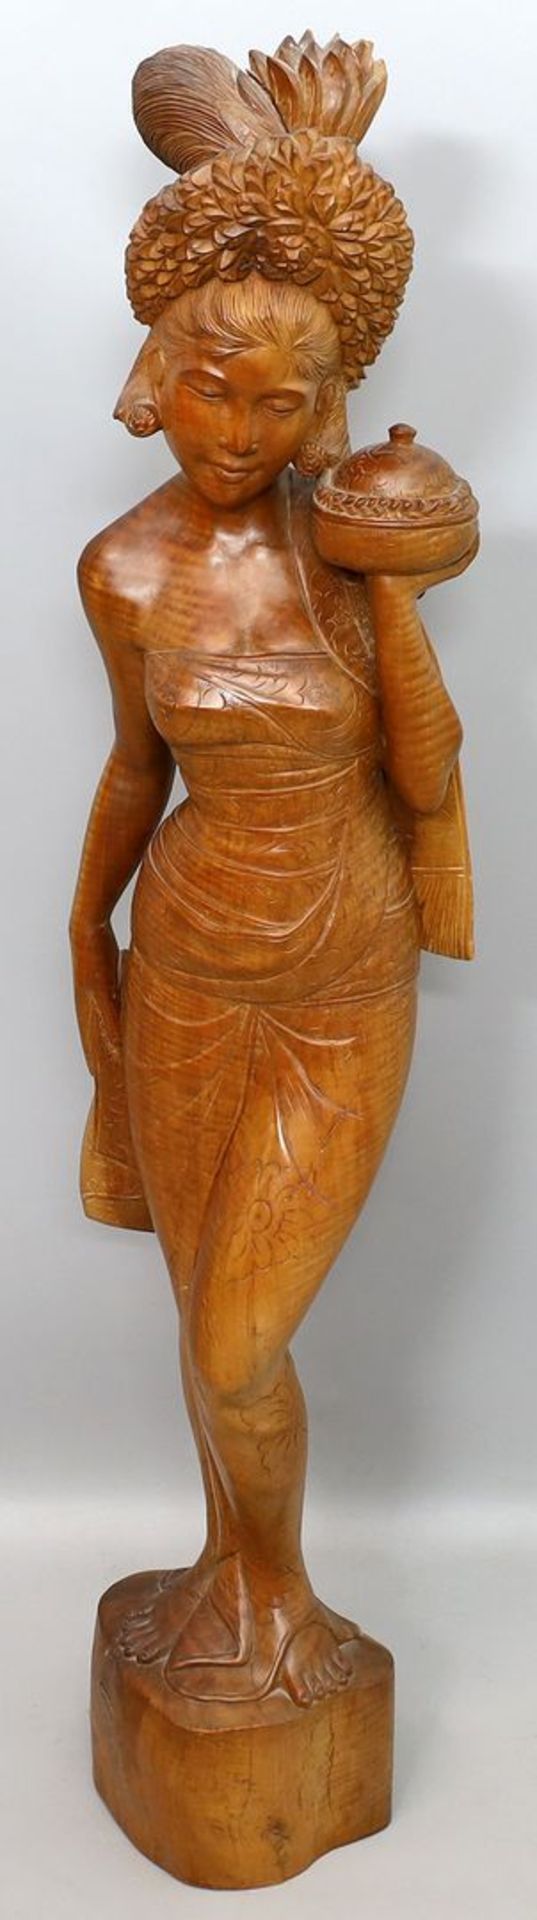 Skulptur "Balinesische Schönheit".